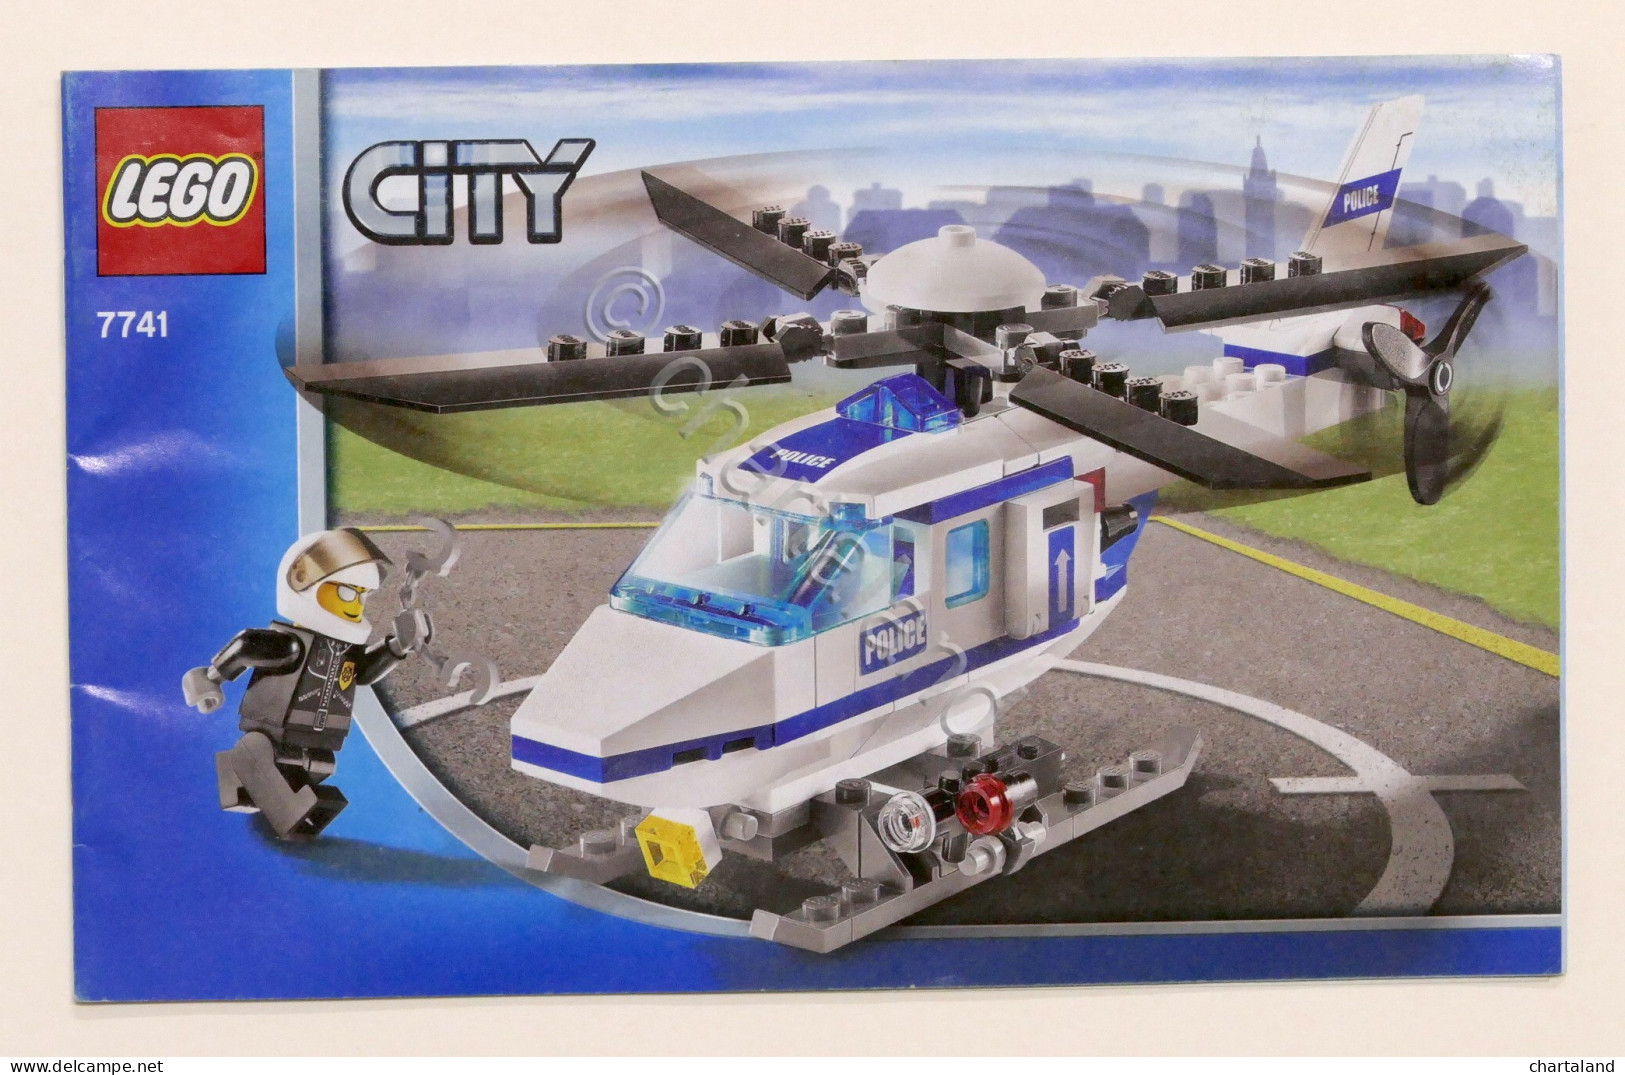 LEGO City - Manuale Istruzioni 7741 - Elicottero Polizia - Unclassified